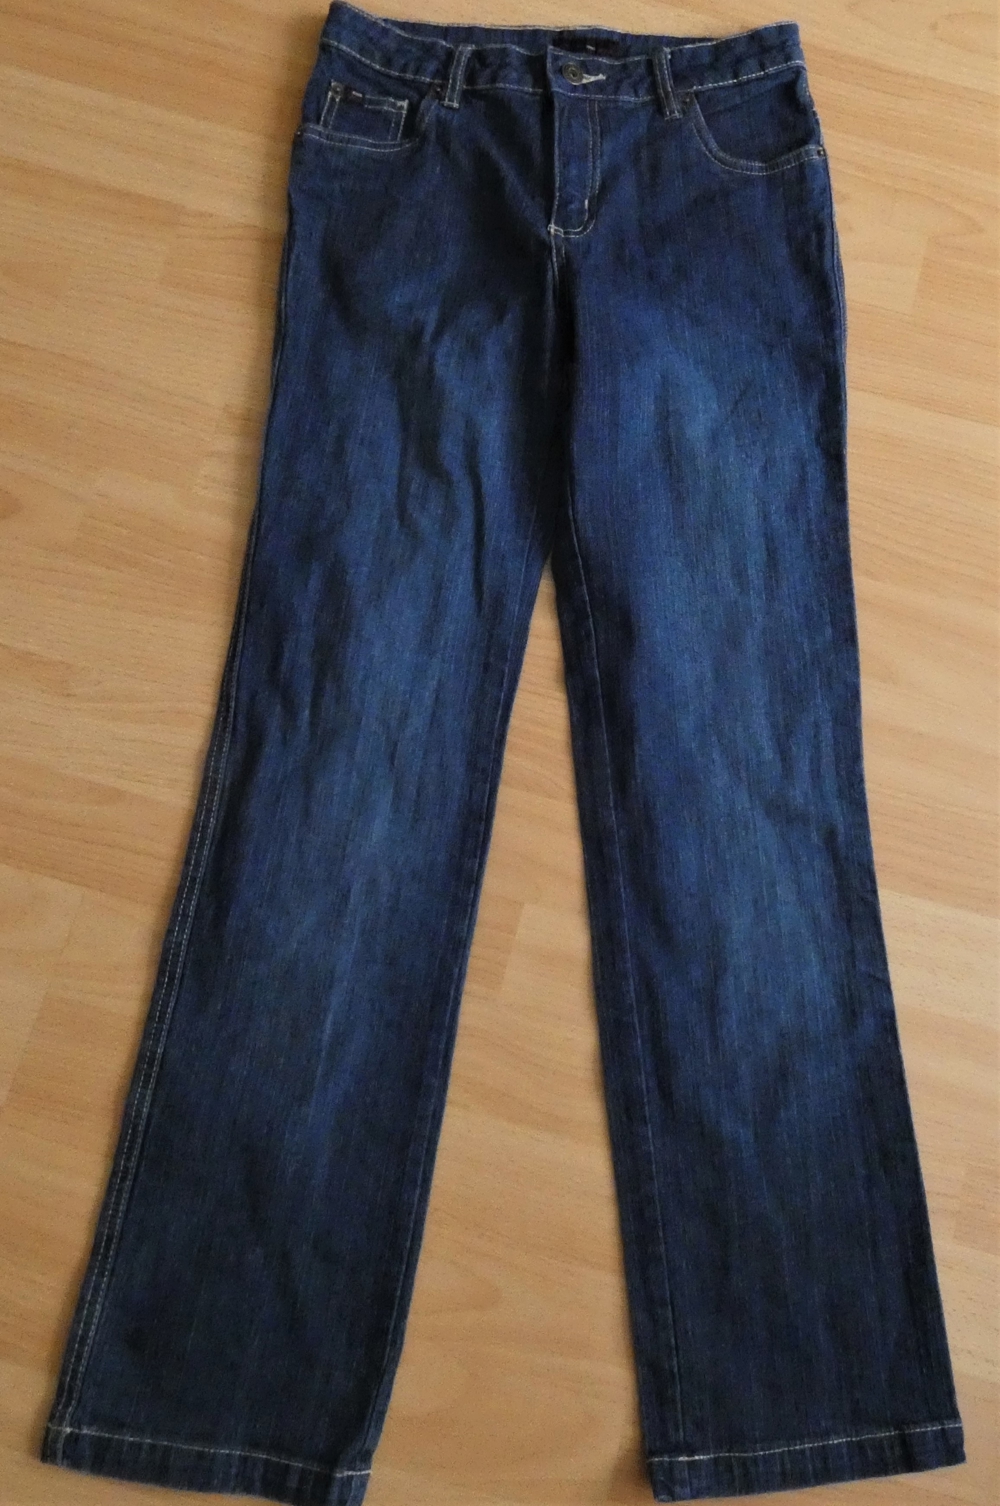 Jeans blau Gr. 152 / miss petrolio / Stickerei auf Gesäßtasche